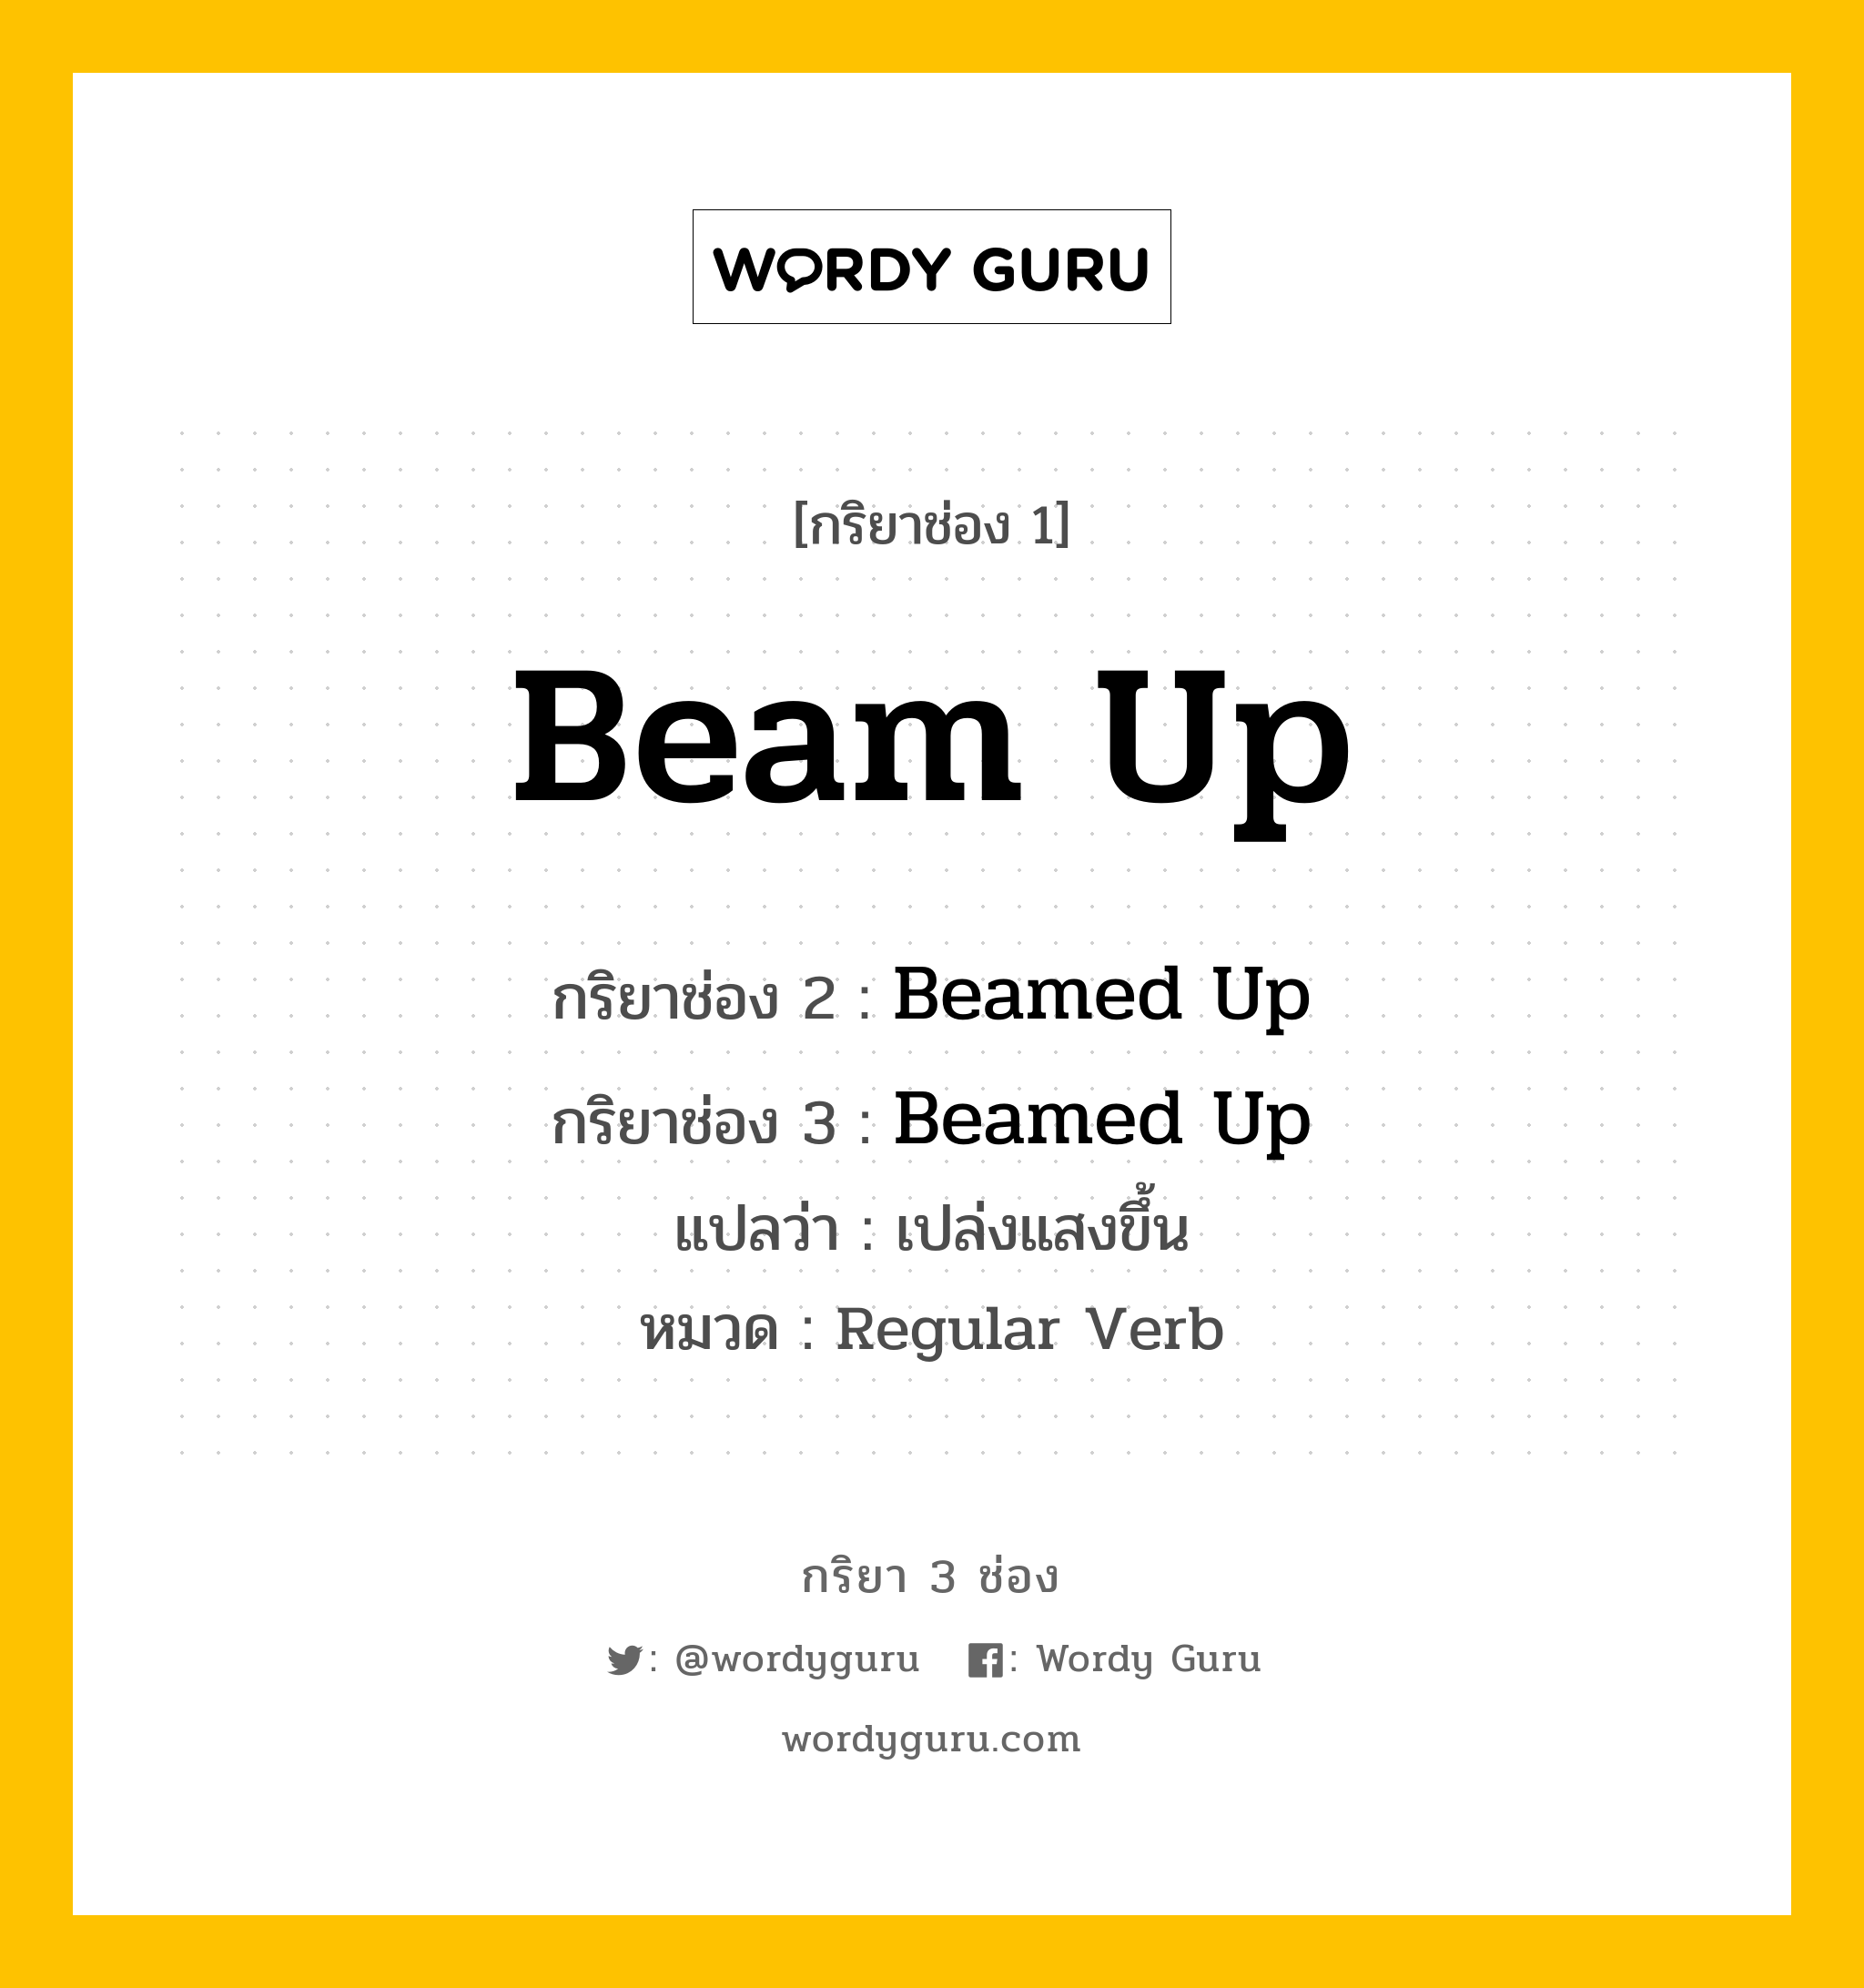 กริยา 3 ช่อง: Beam Up ช่อง 2 Beam Up ช่อง 3 คืออะไร, กริยาช่อง 1 Beam Up กริยาช่อง 2 Beamed Up กริยาช่อง 3 Beamed Up แปลว่า เปล่งแสงขึ้น หมวด Regular Verb หมวด Regular Verb